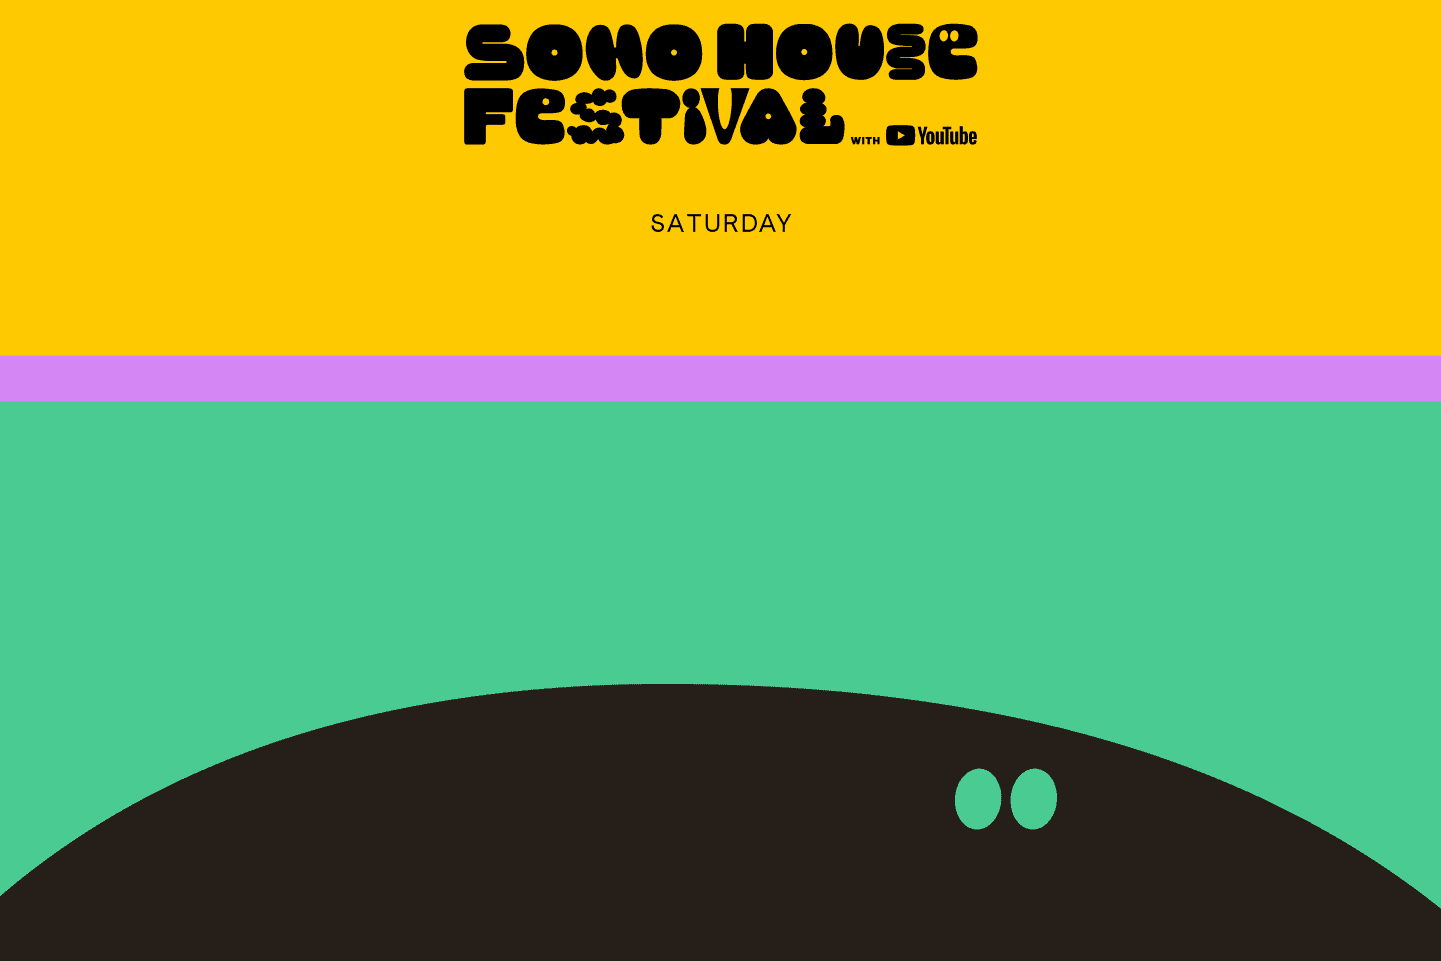 Soho House Festival Saturday